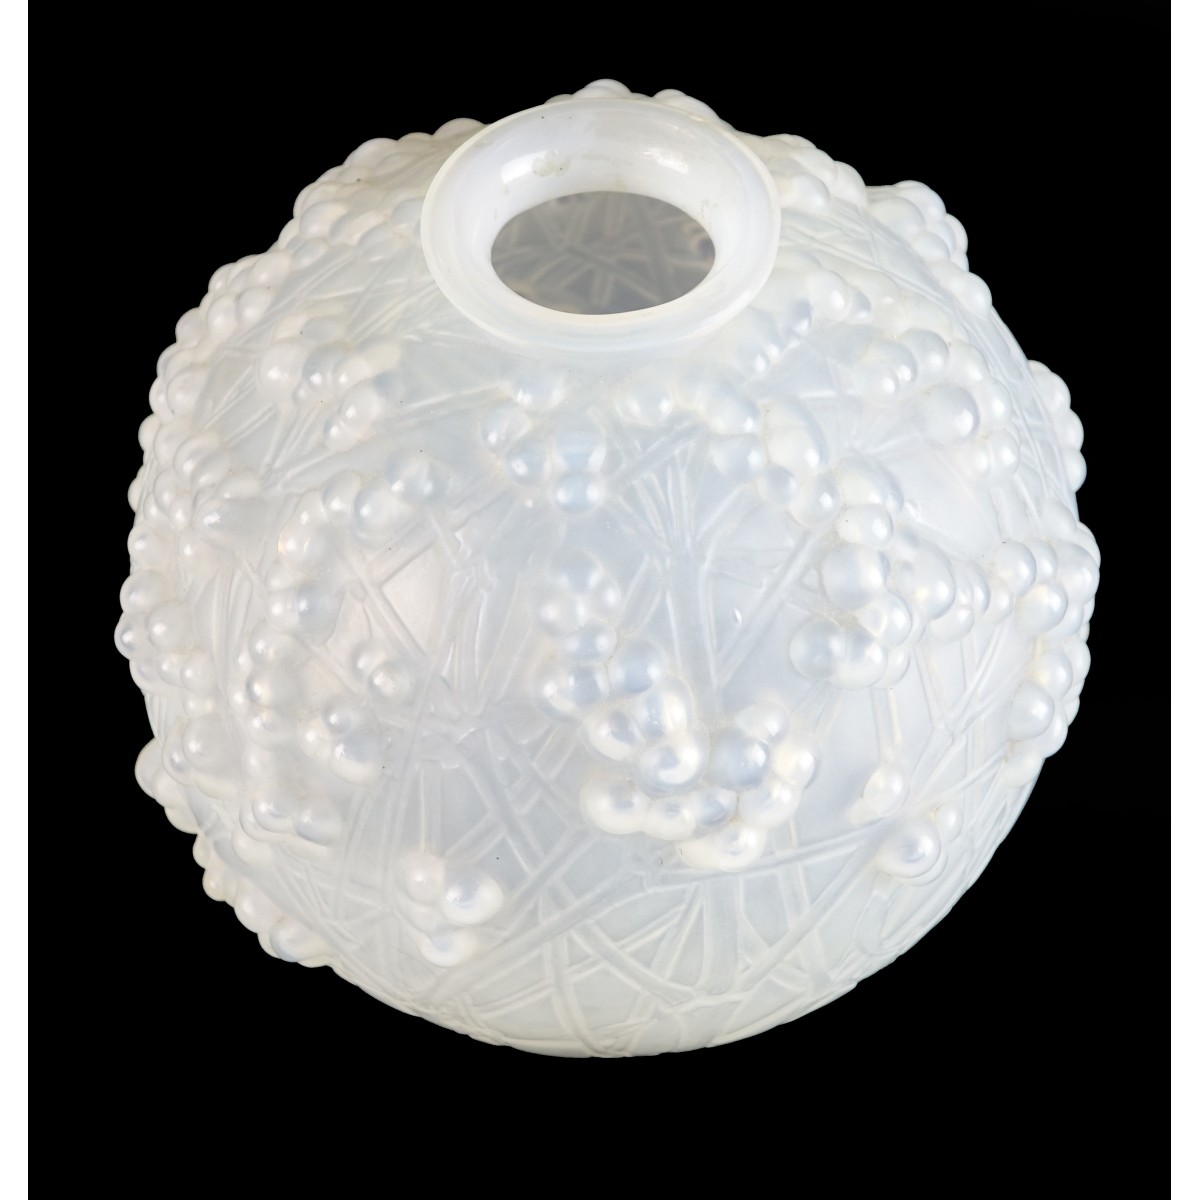 Rene Lalique "Druide" Vase